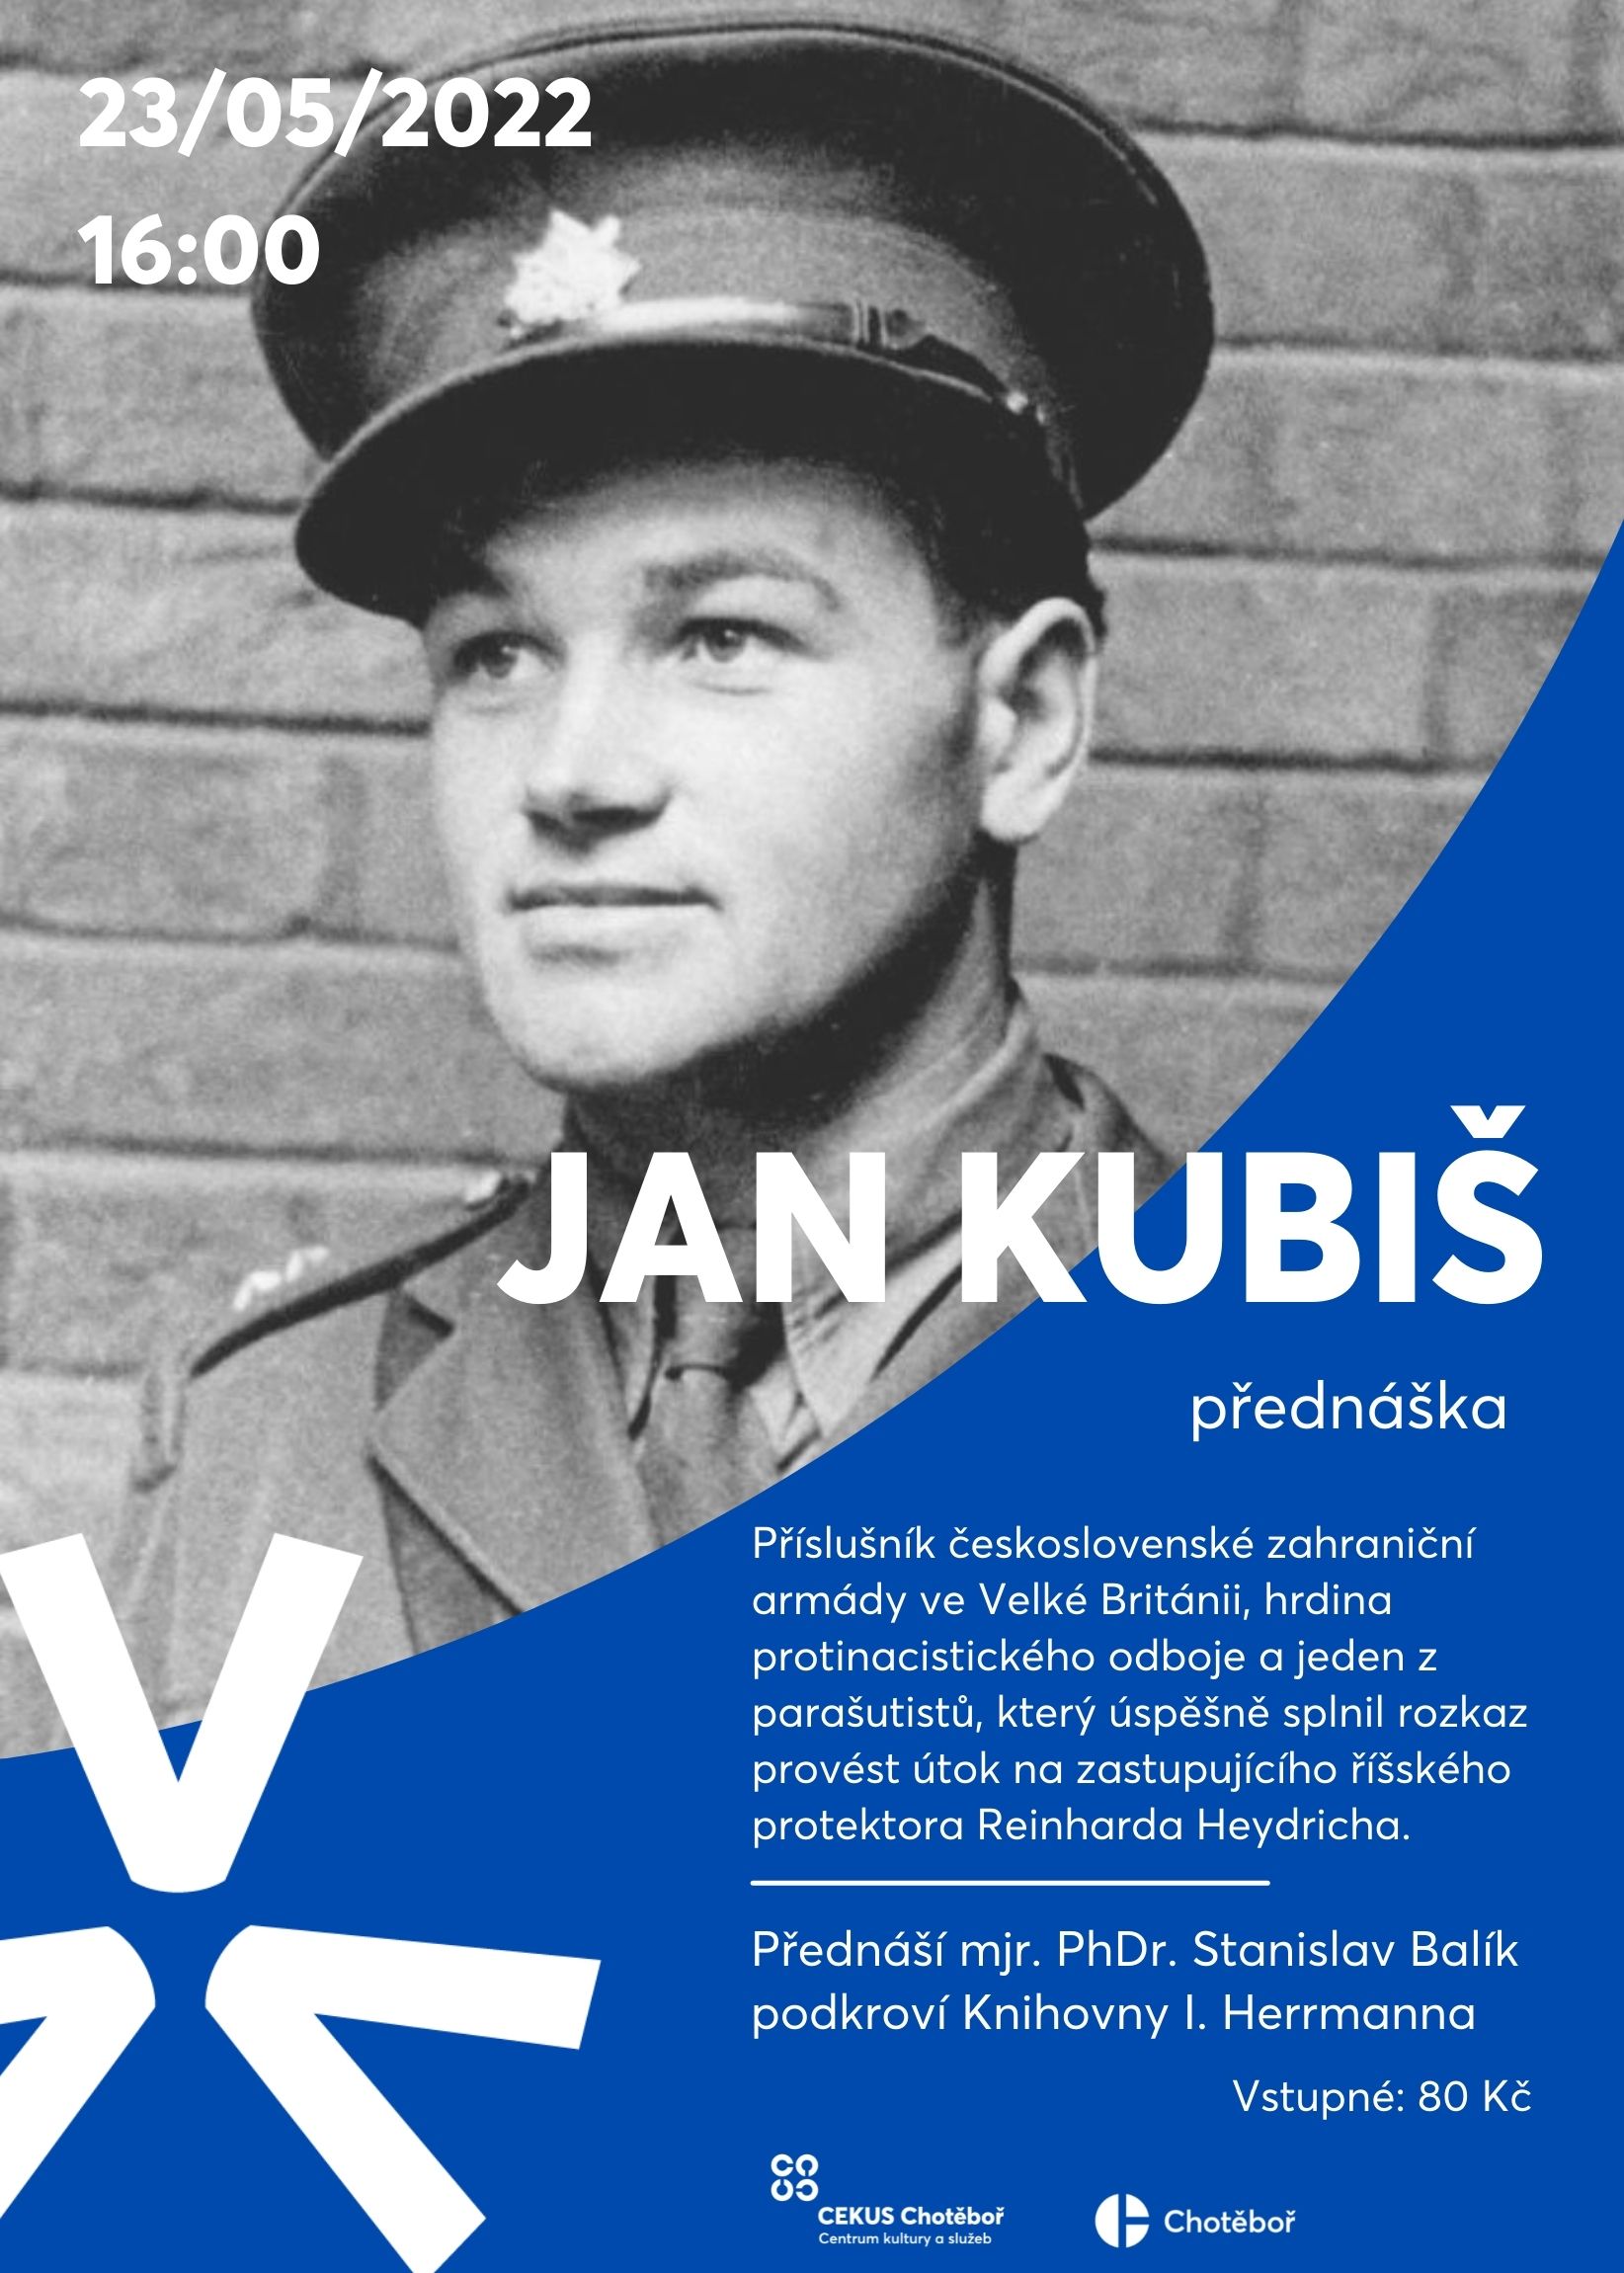 2022 05 23 Jan Kubiš